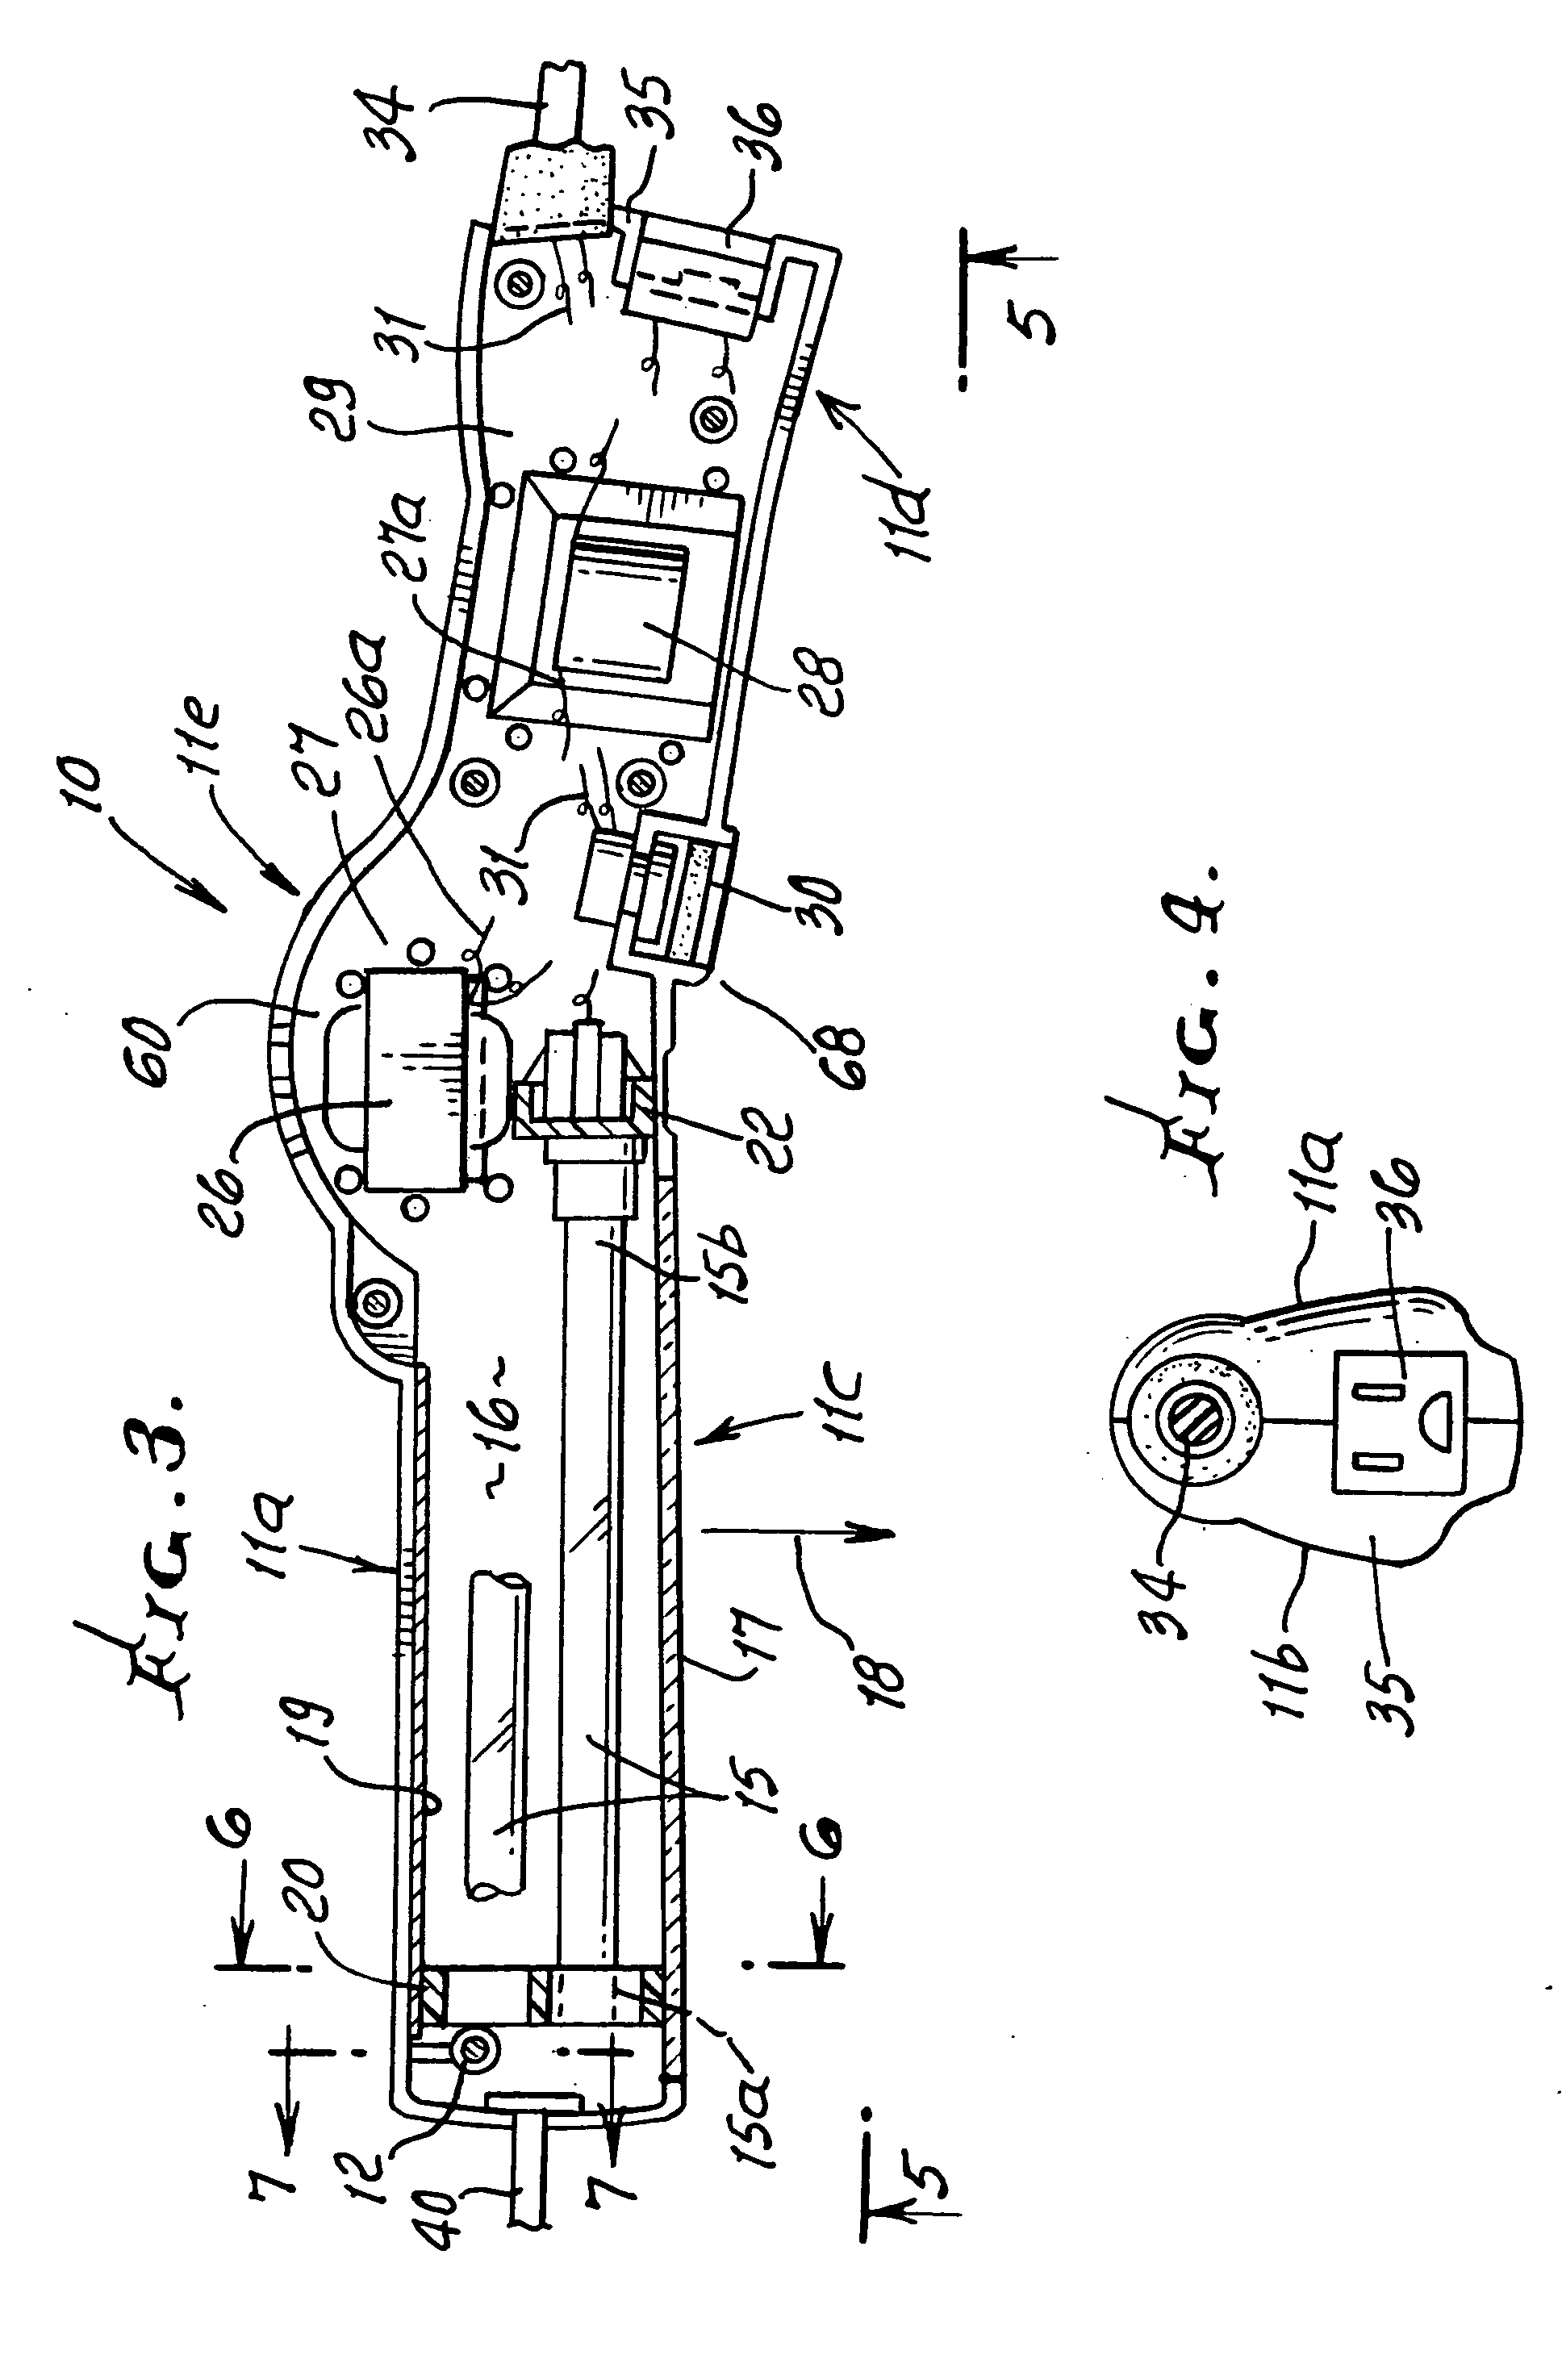 Drop-light apparatus